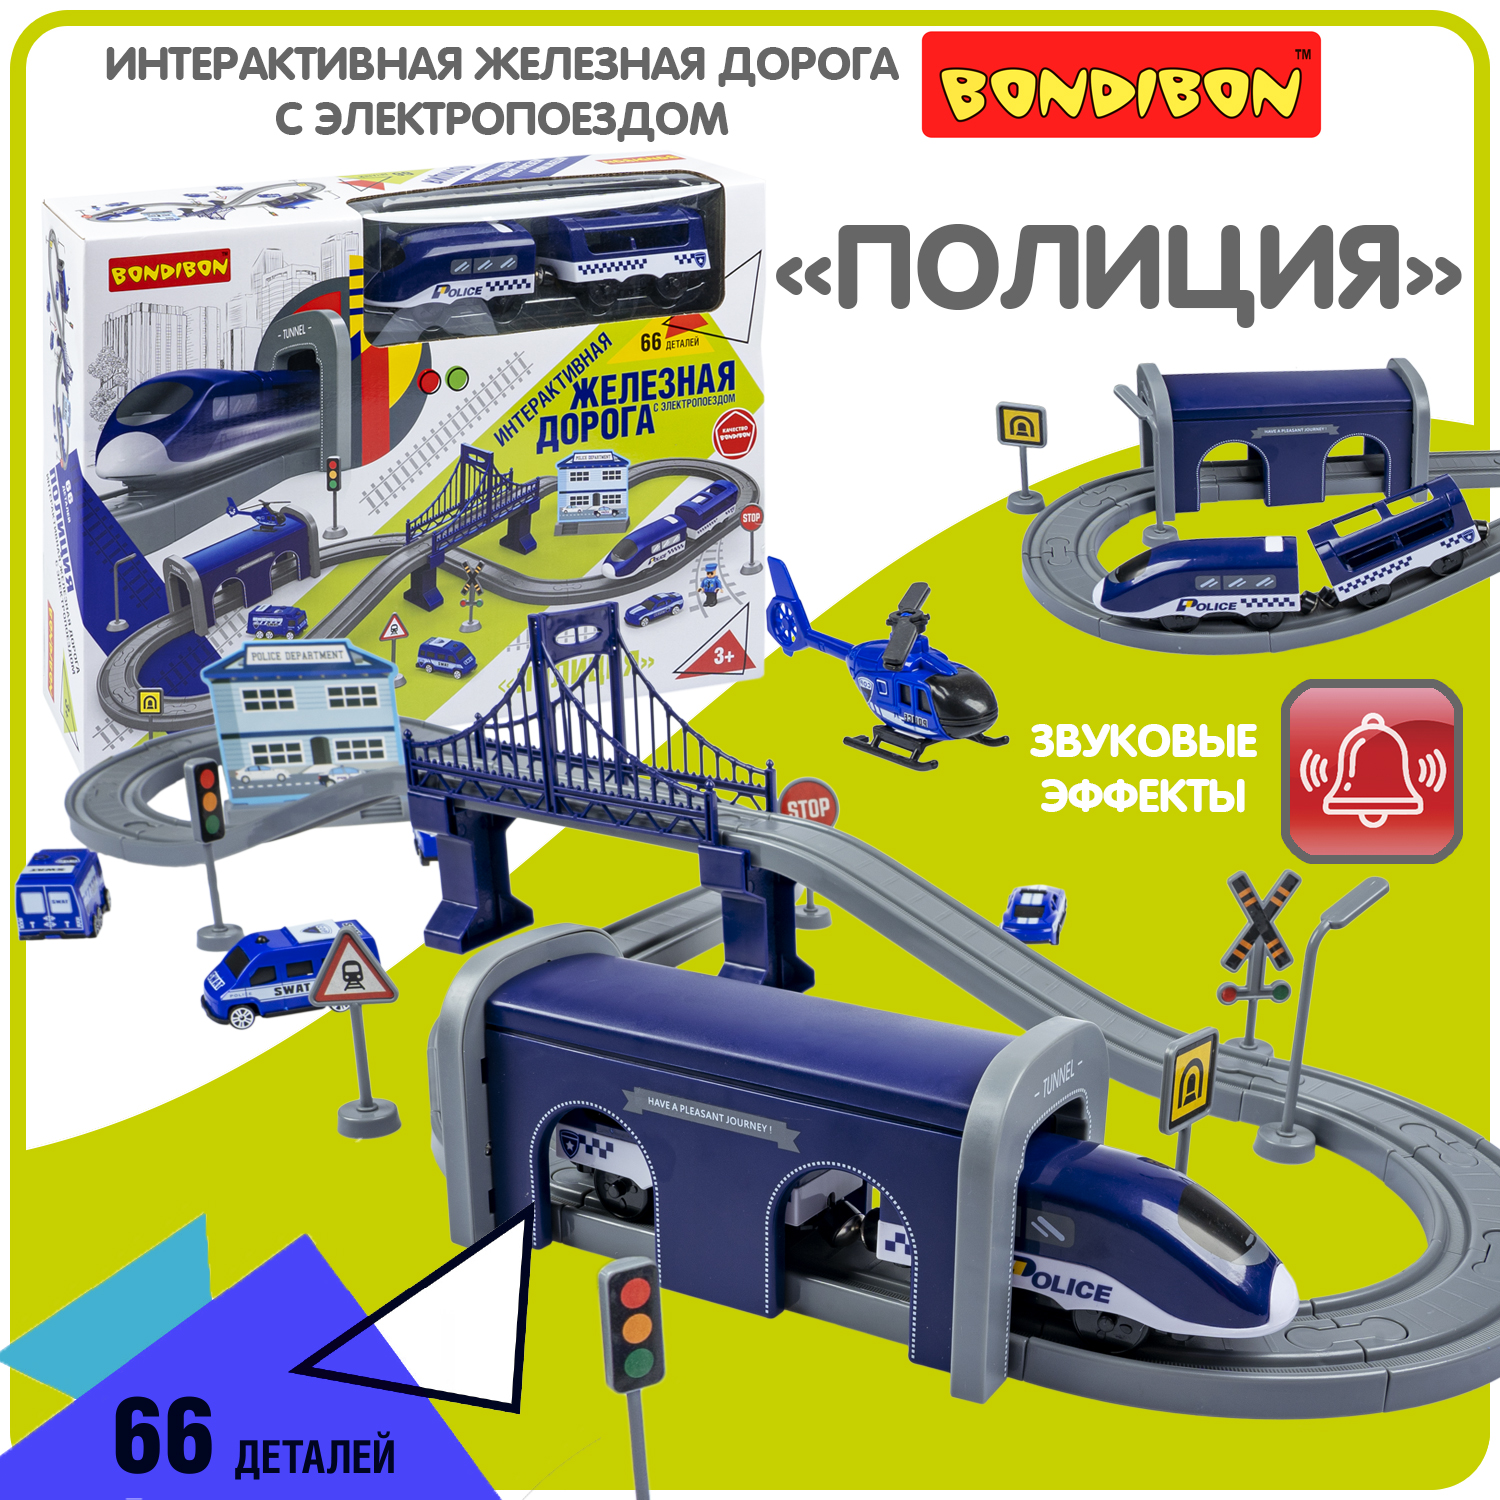 Интерактивная железная дорога Bondibon с электропоездом, полиция